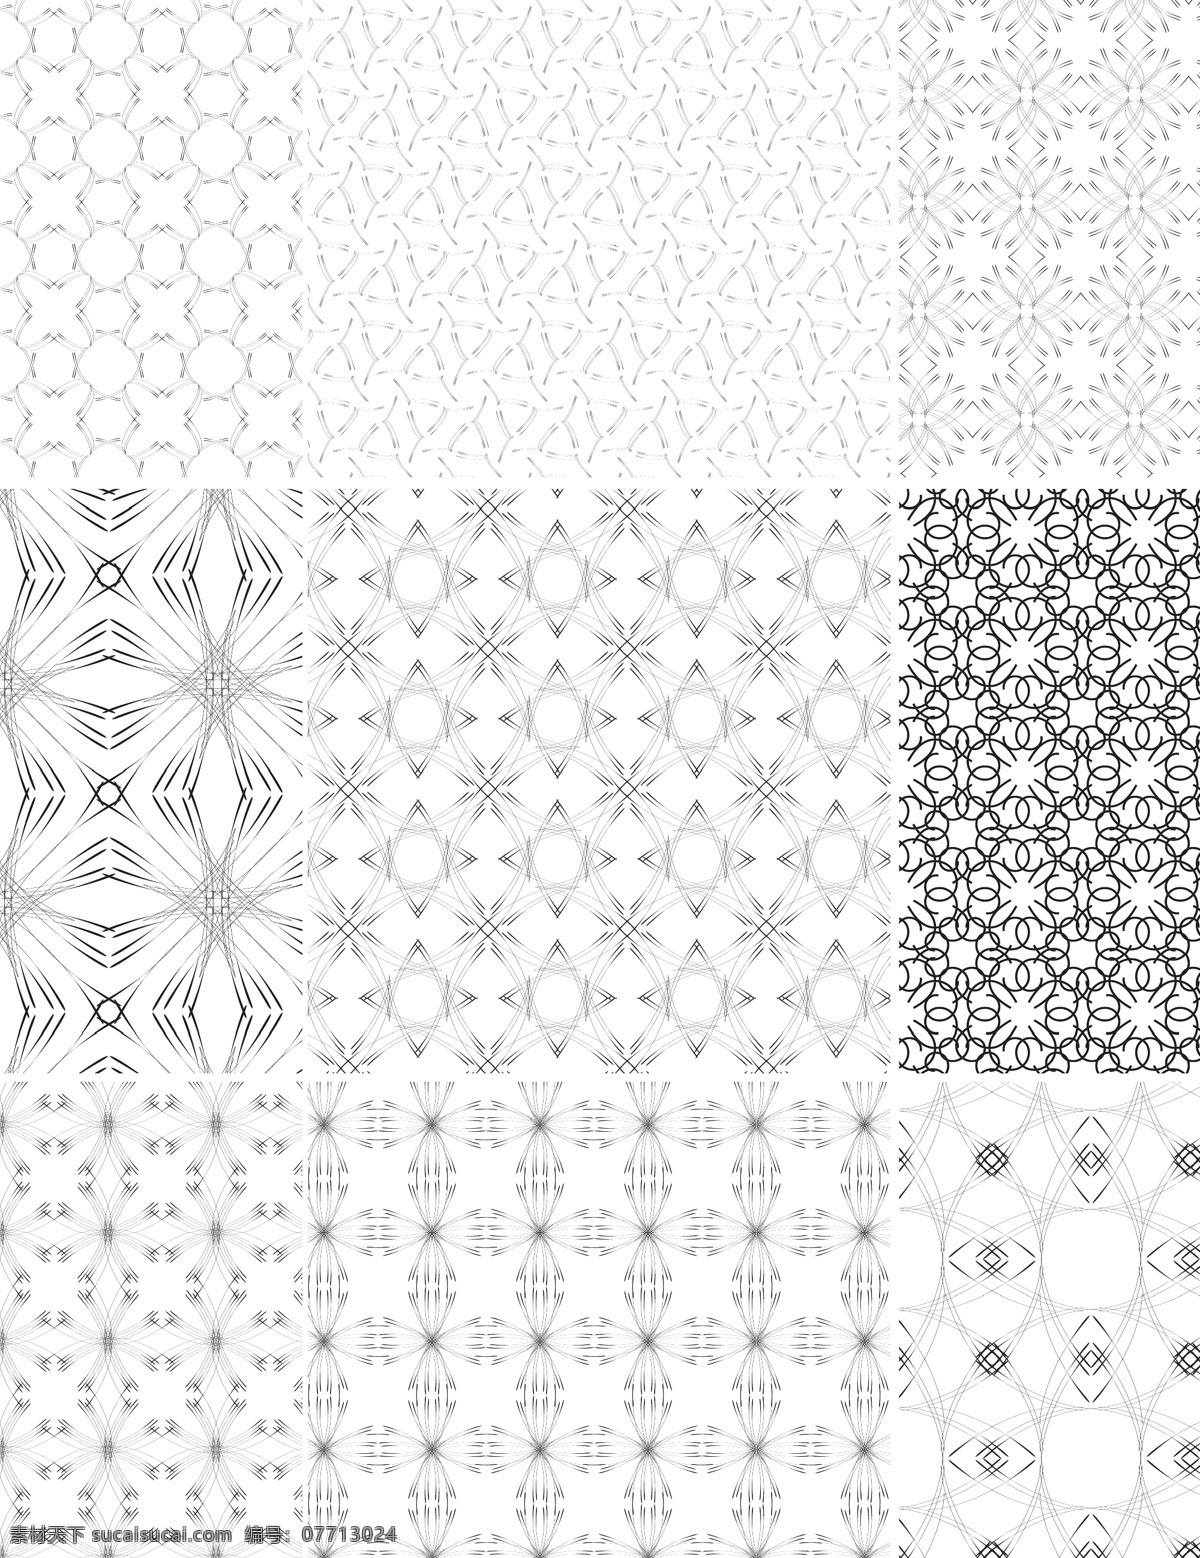 单色 欧式 花纹 平铺 背景 黑白 连续背景 模板 平铺背景 设计稿 素材元素 源文件 矢量图